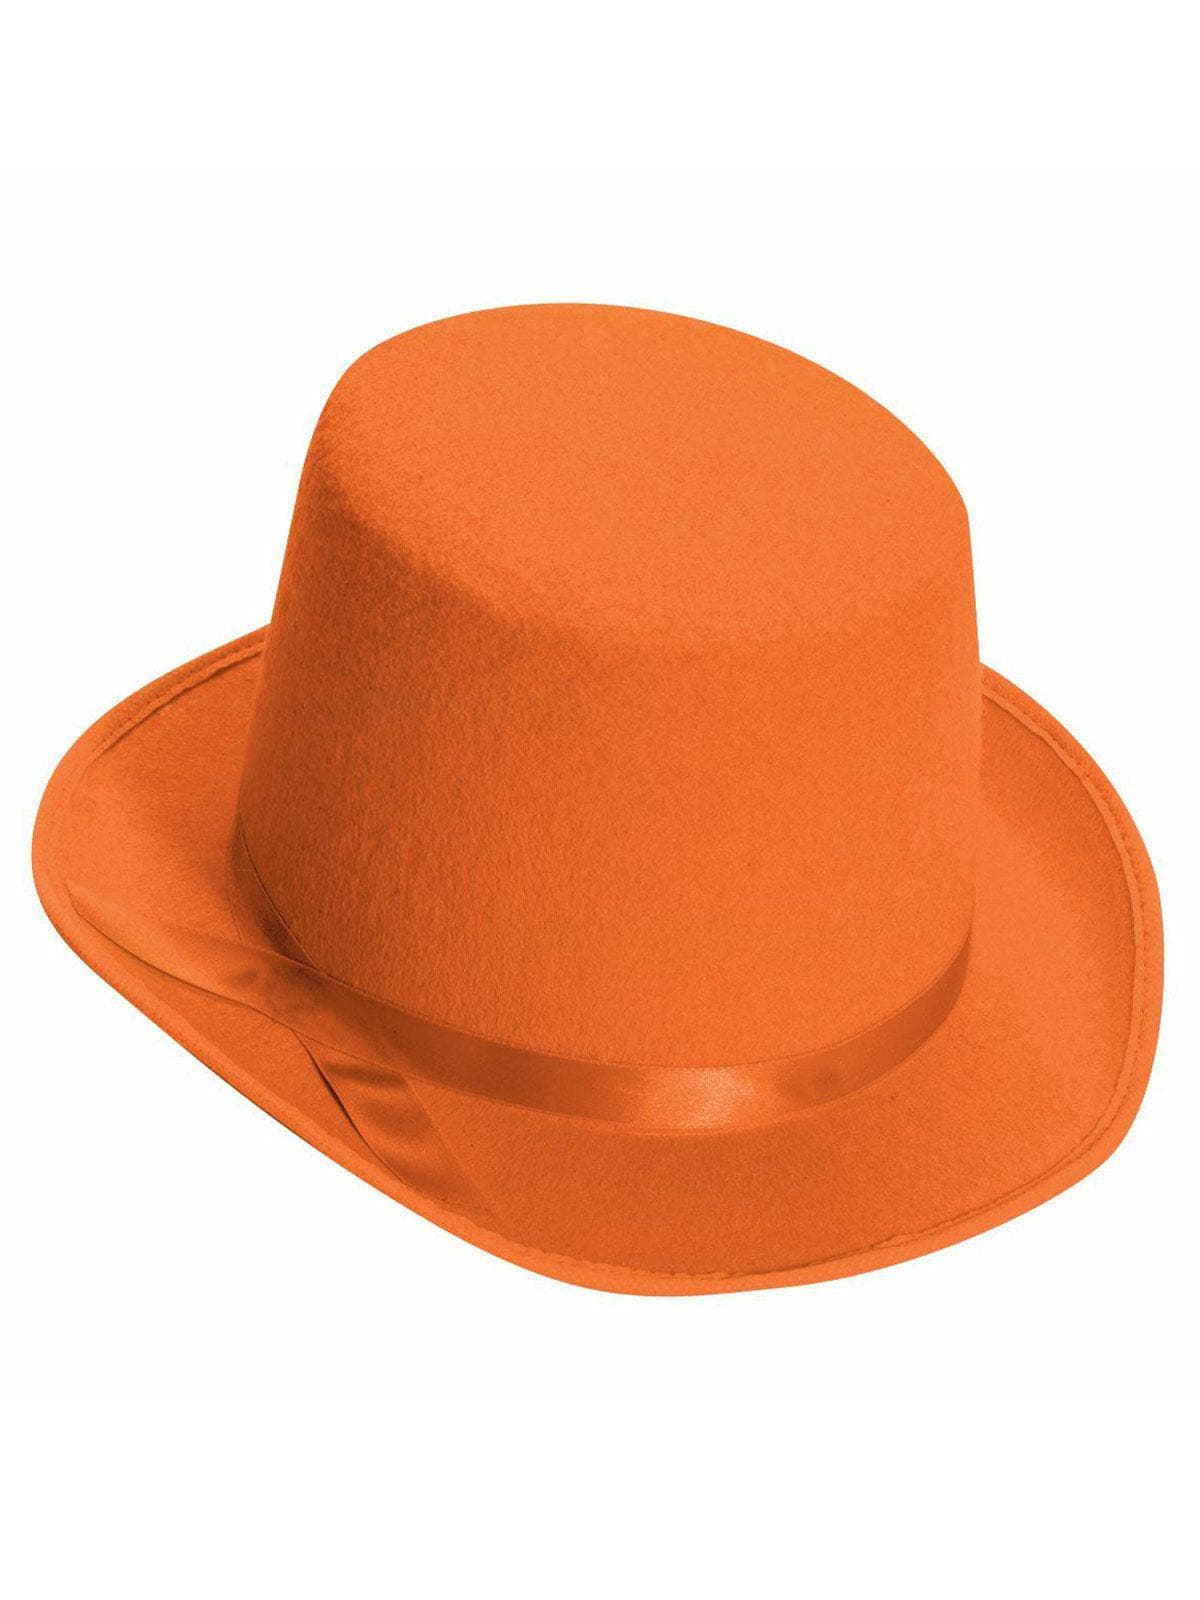 Adult Orange Classic Top Hat - costumes.com